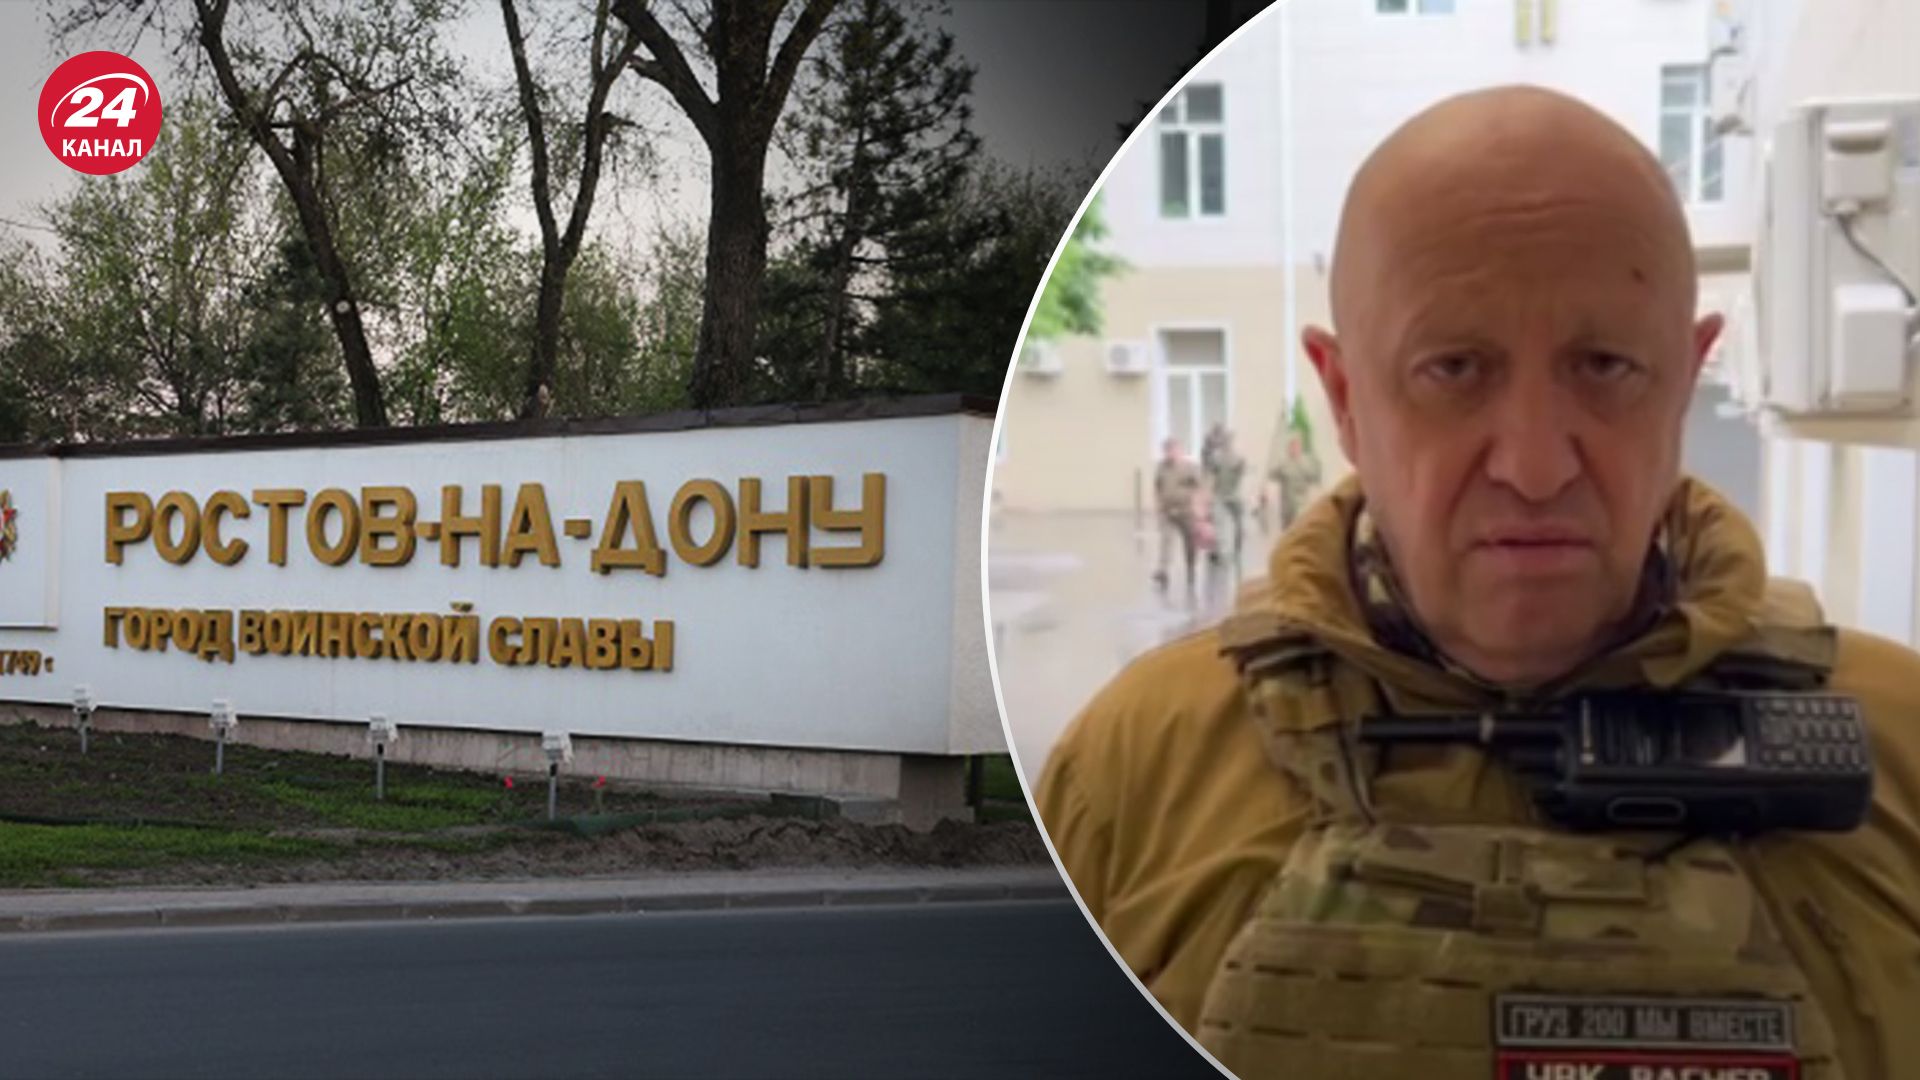 Пригожин заявил о взятии военных объектов в Ростове